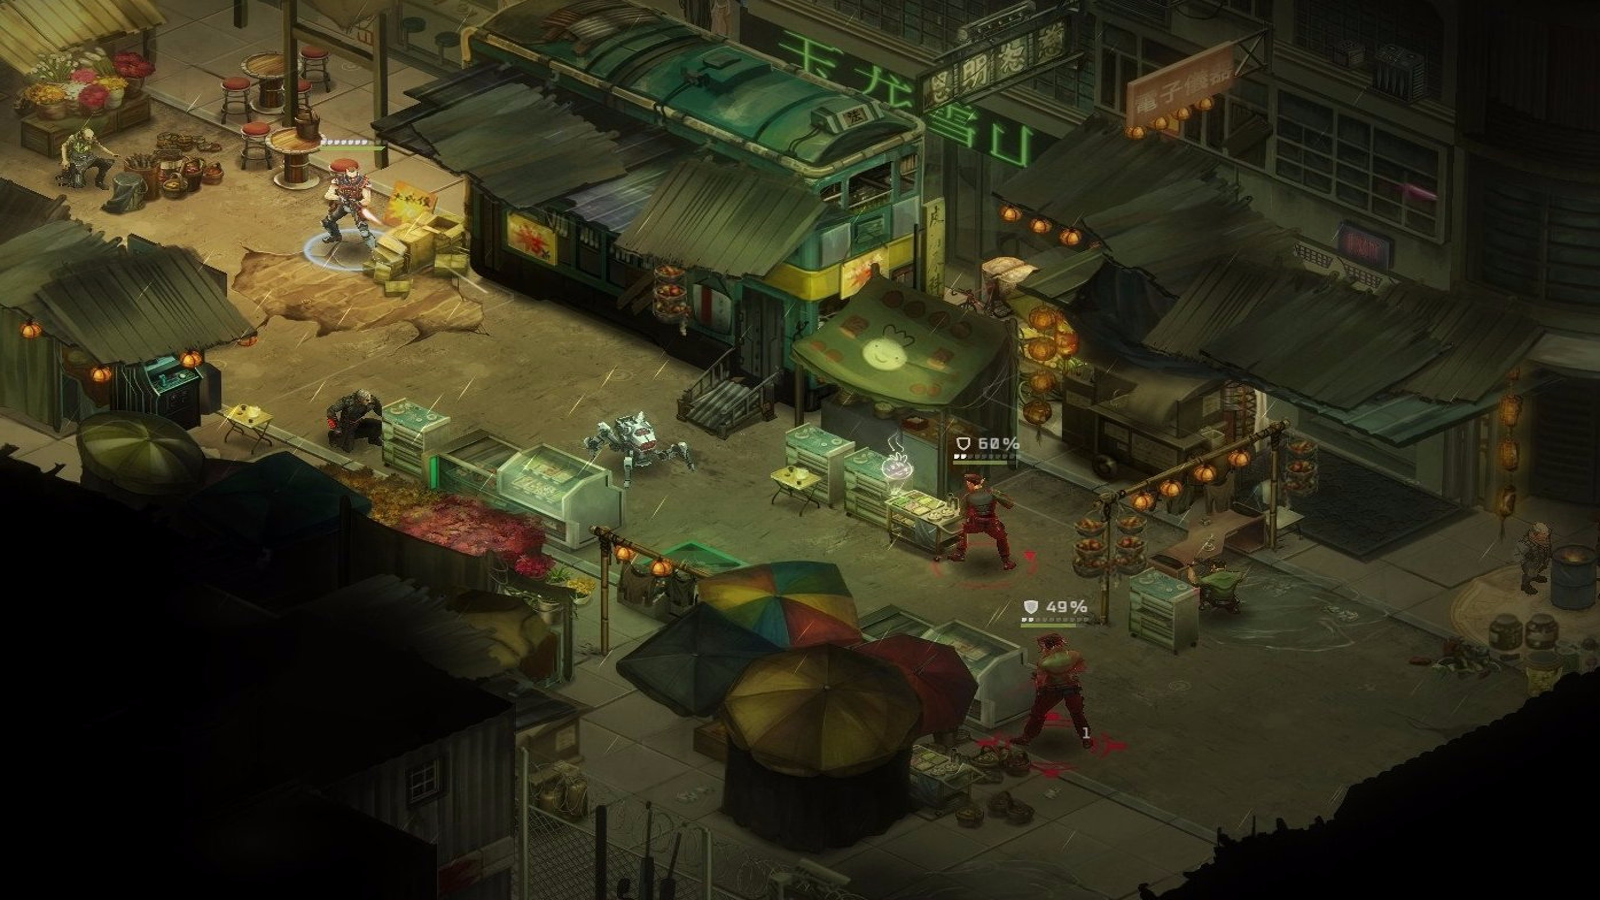 Shadowrun: Hong Kong Gets First Trailer and Screenshots - GameSpot